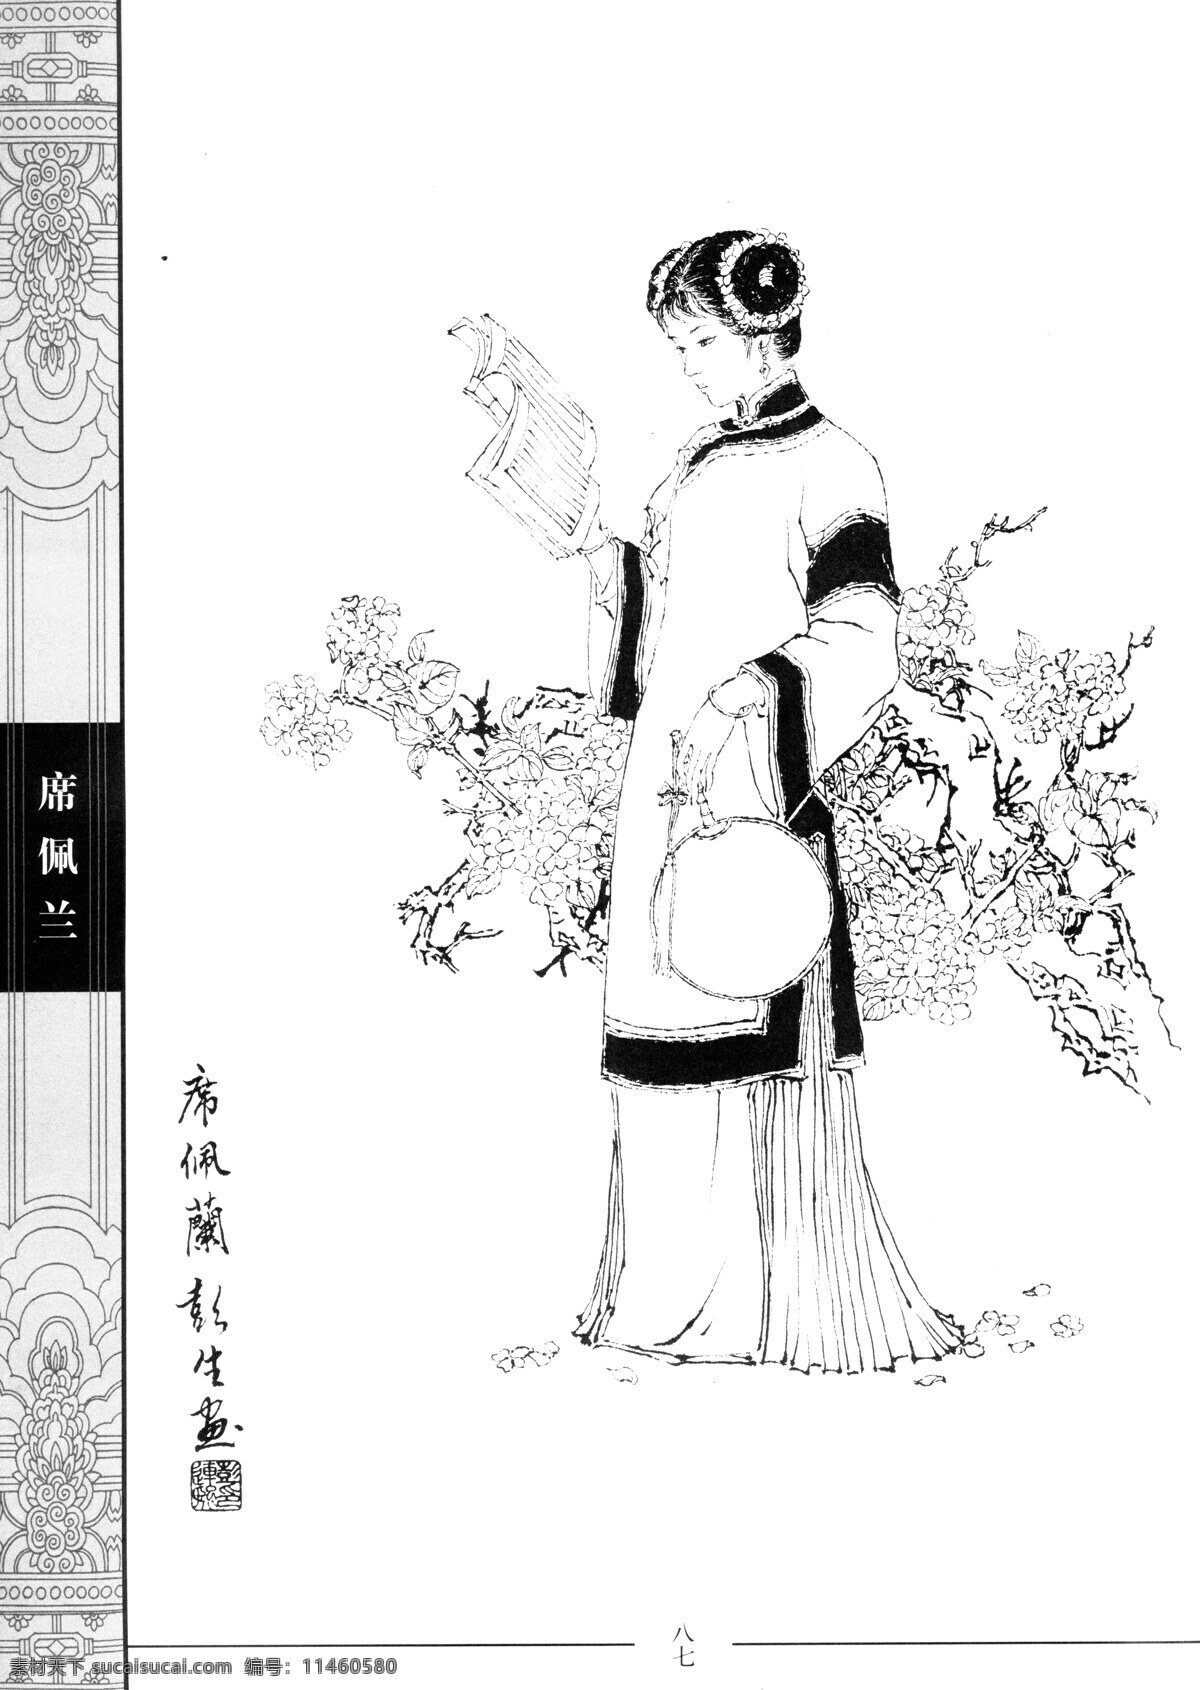 中国仕女百图 席佩兰 仕女 彭连熙 线描 扫描 绘画书法 文化艺术